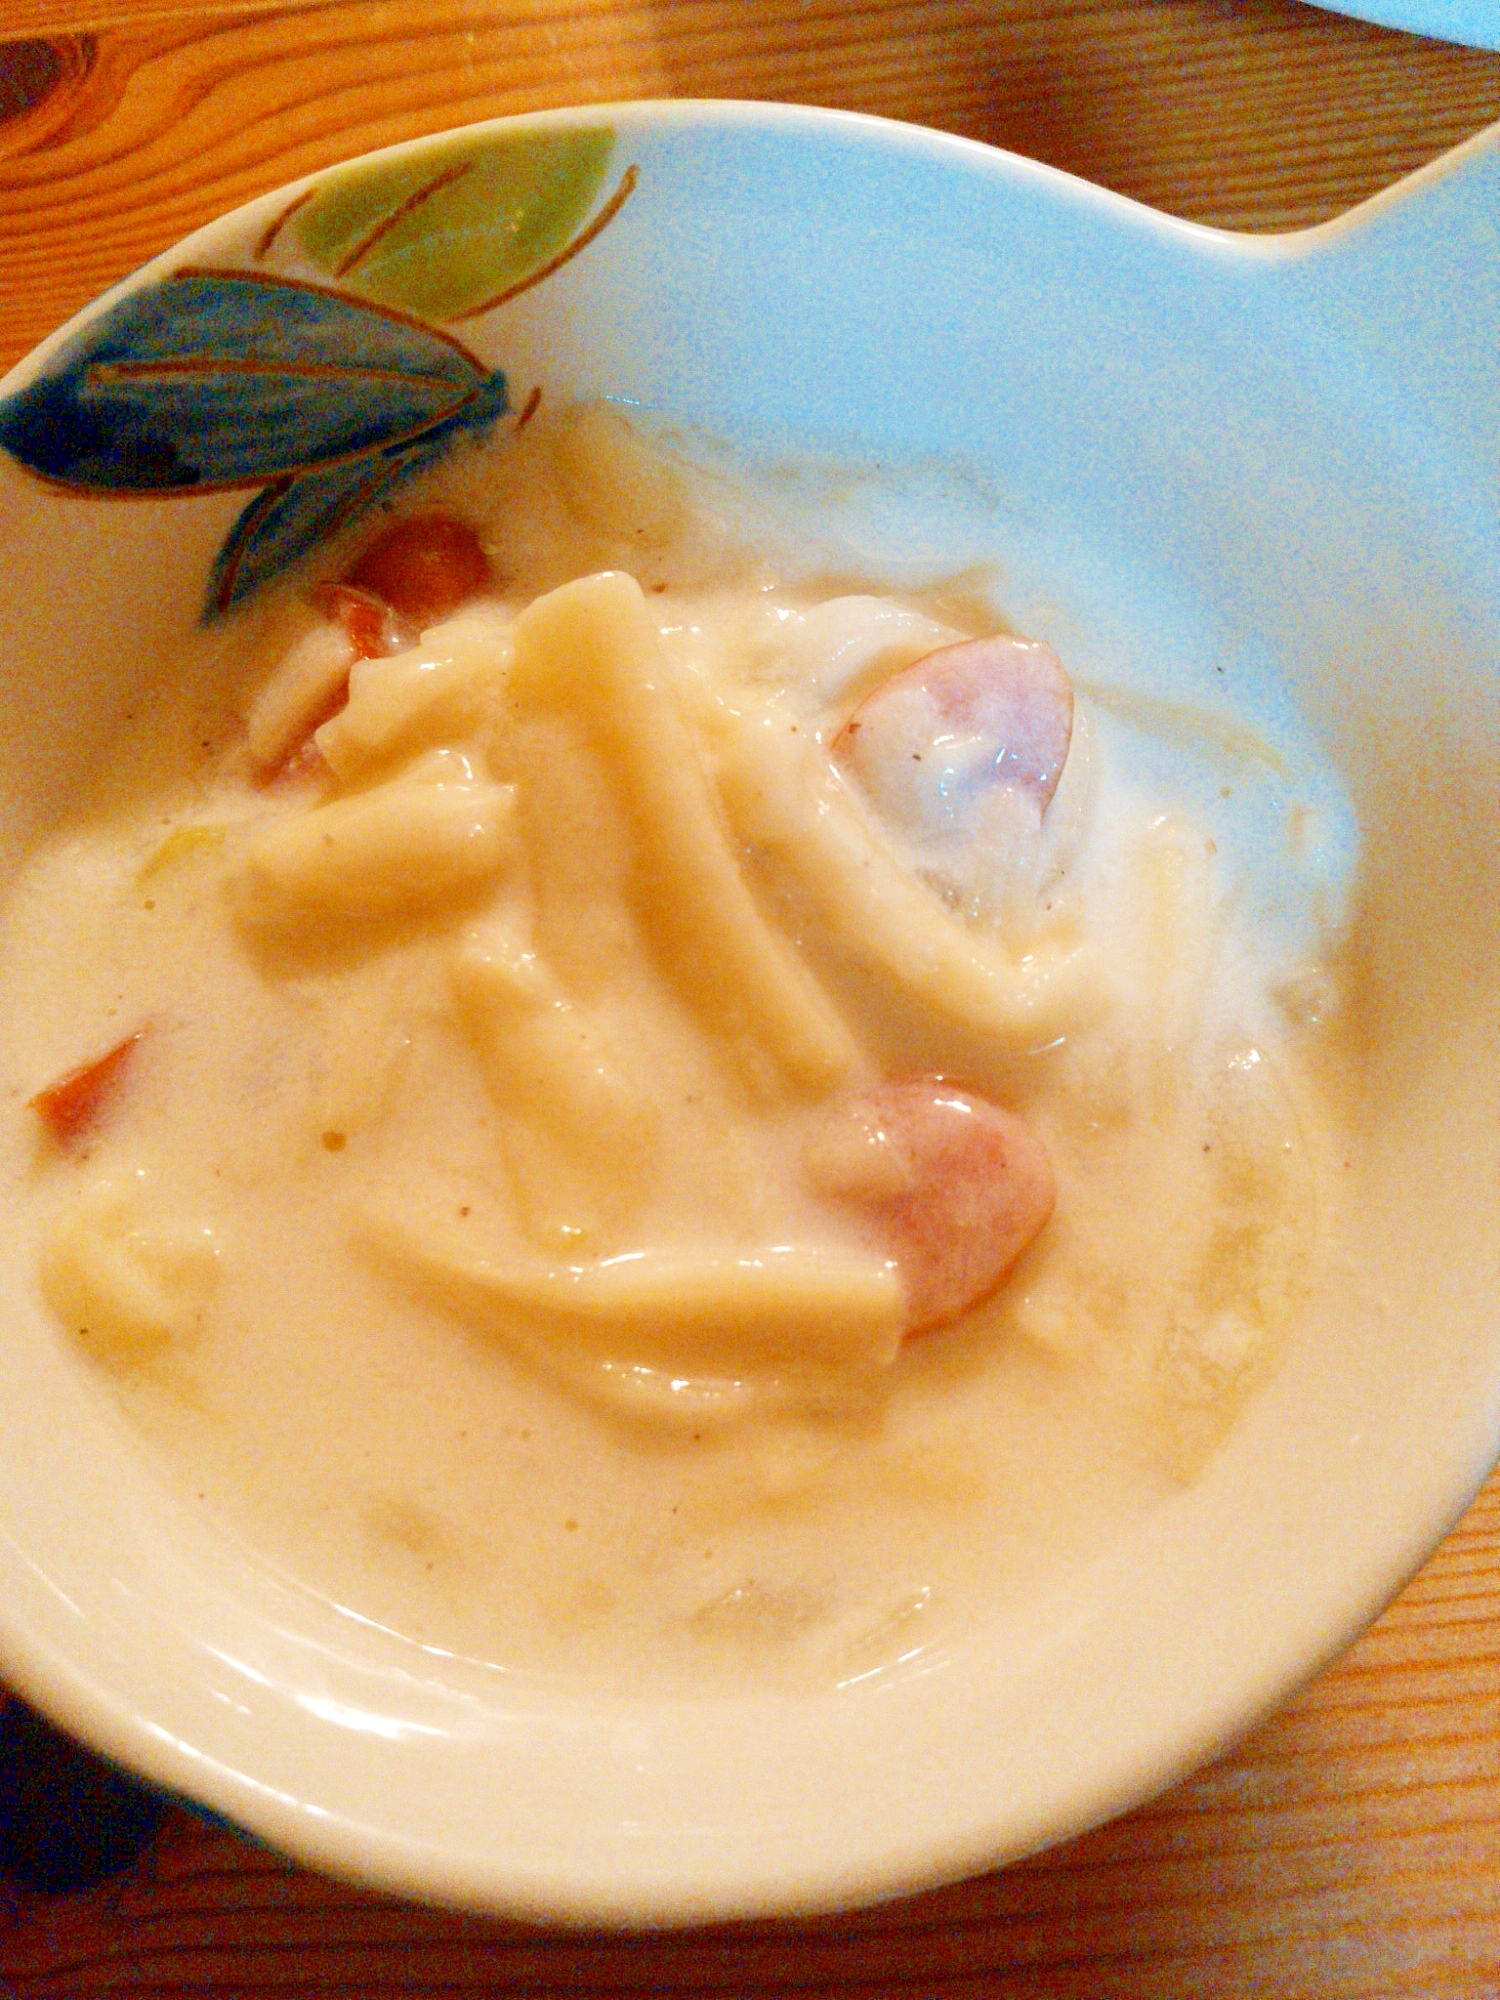 ブロッコリーの茎と牛乳で☆クリームシチュー風スープ